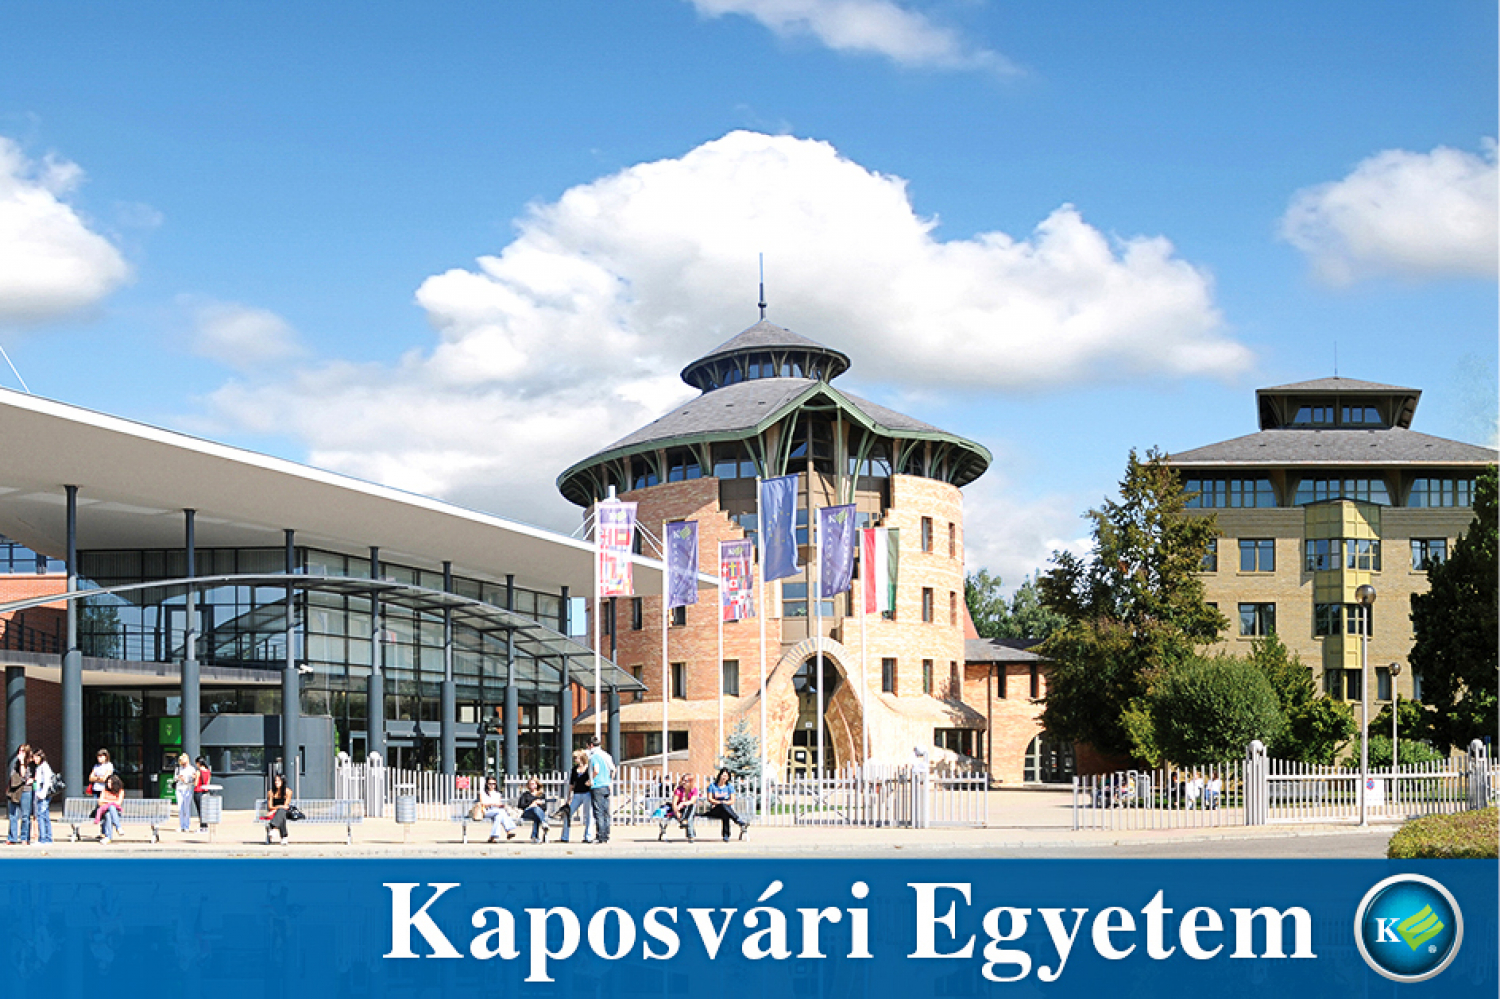 Keresztény Értékrendű Vezetés szakirányú továbbképzés indul a Kaposvári Egyetemen